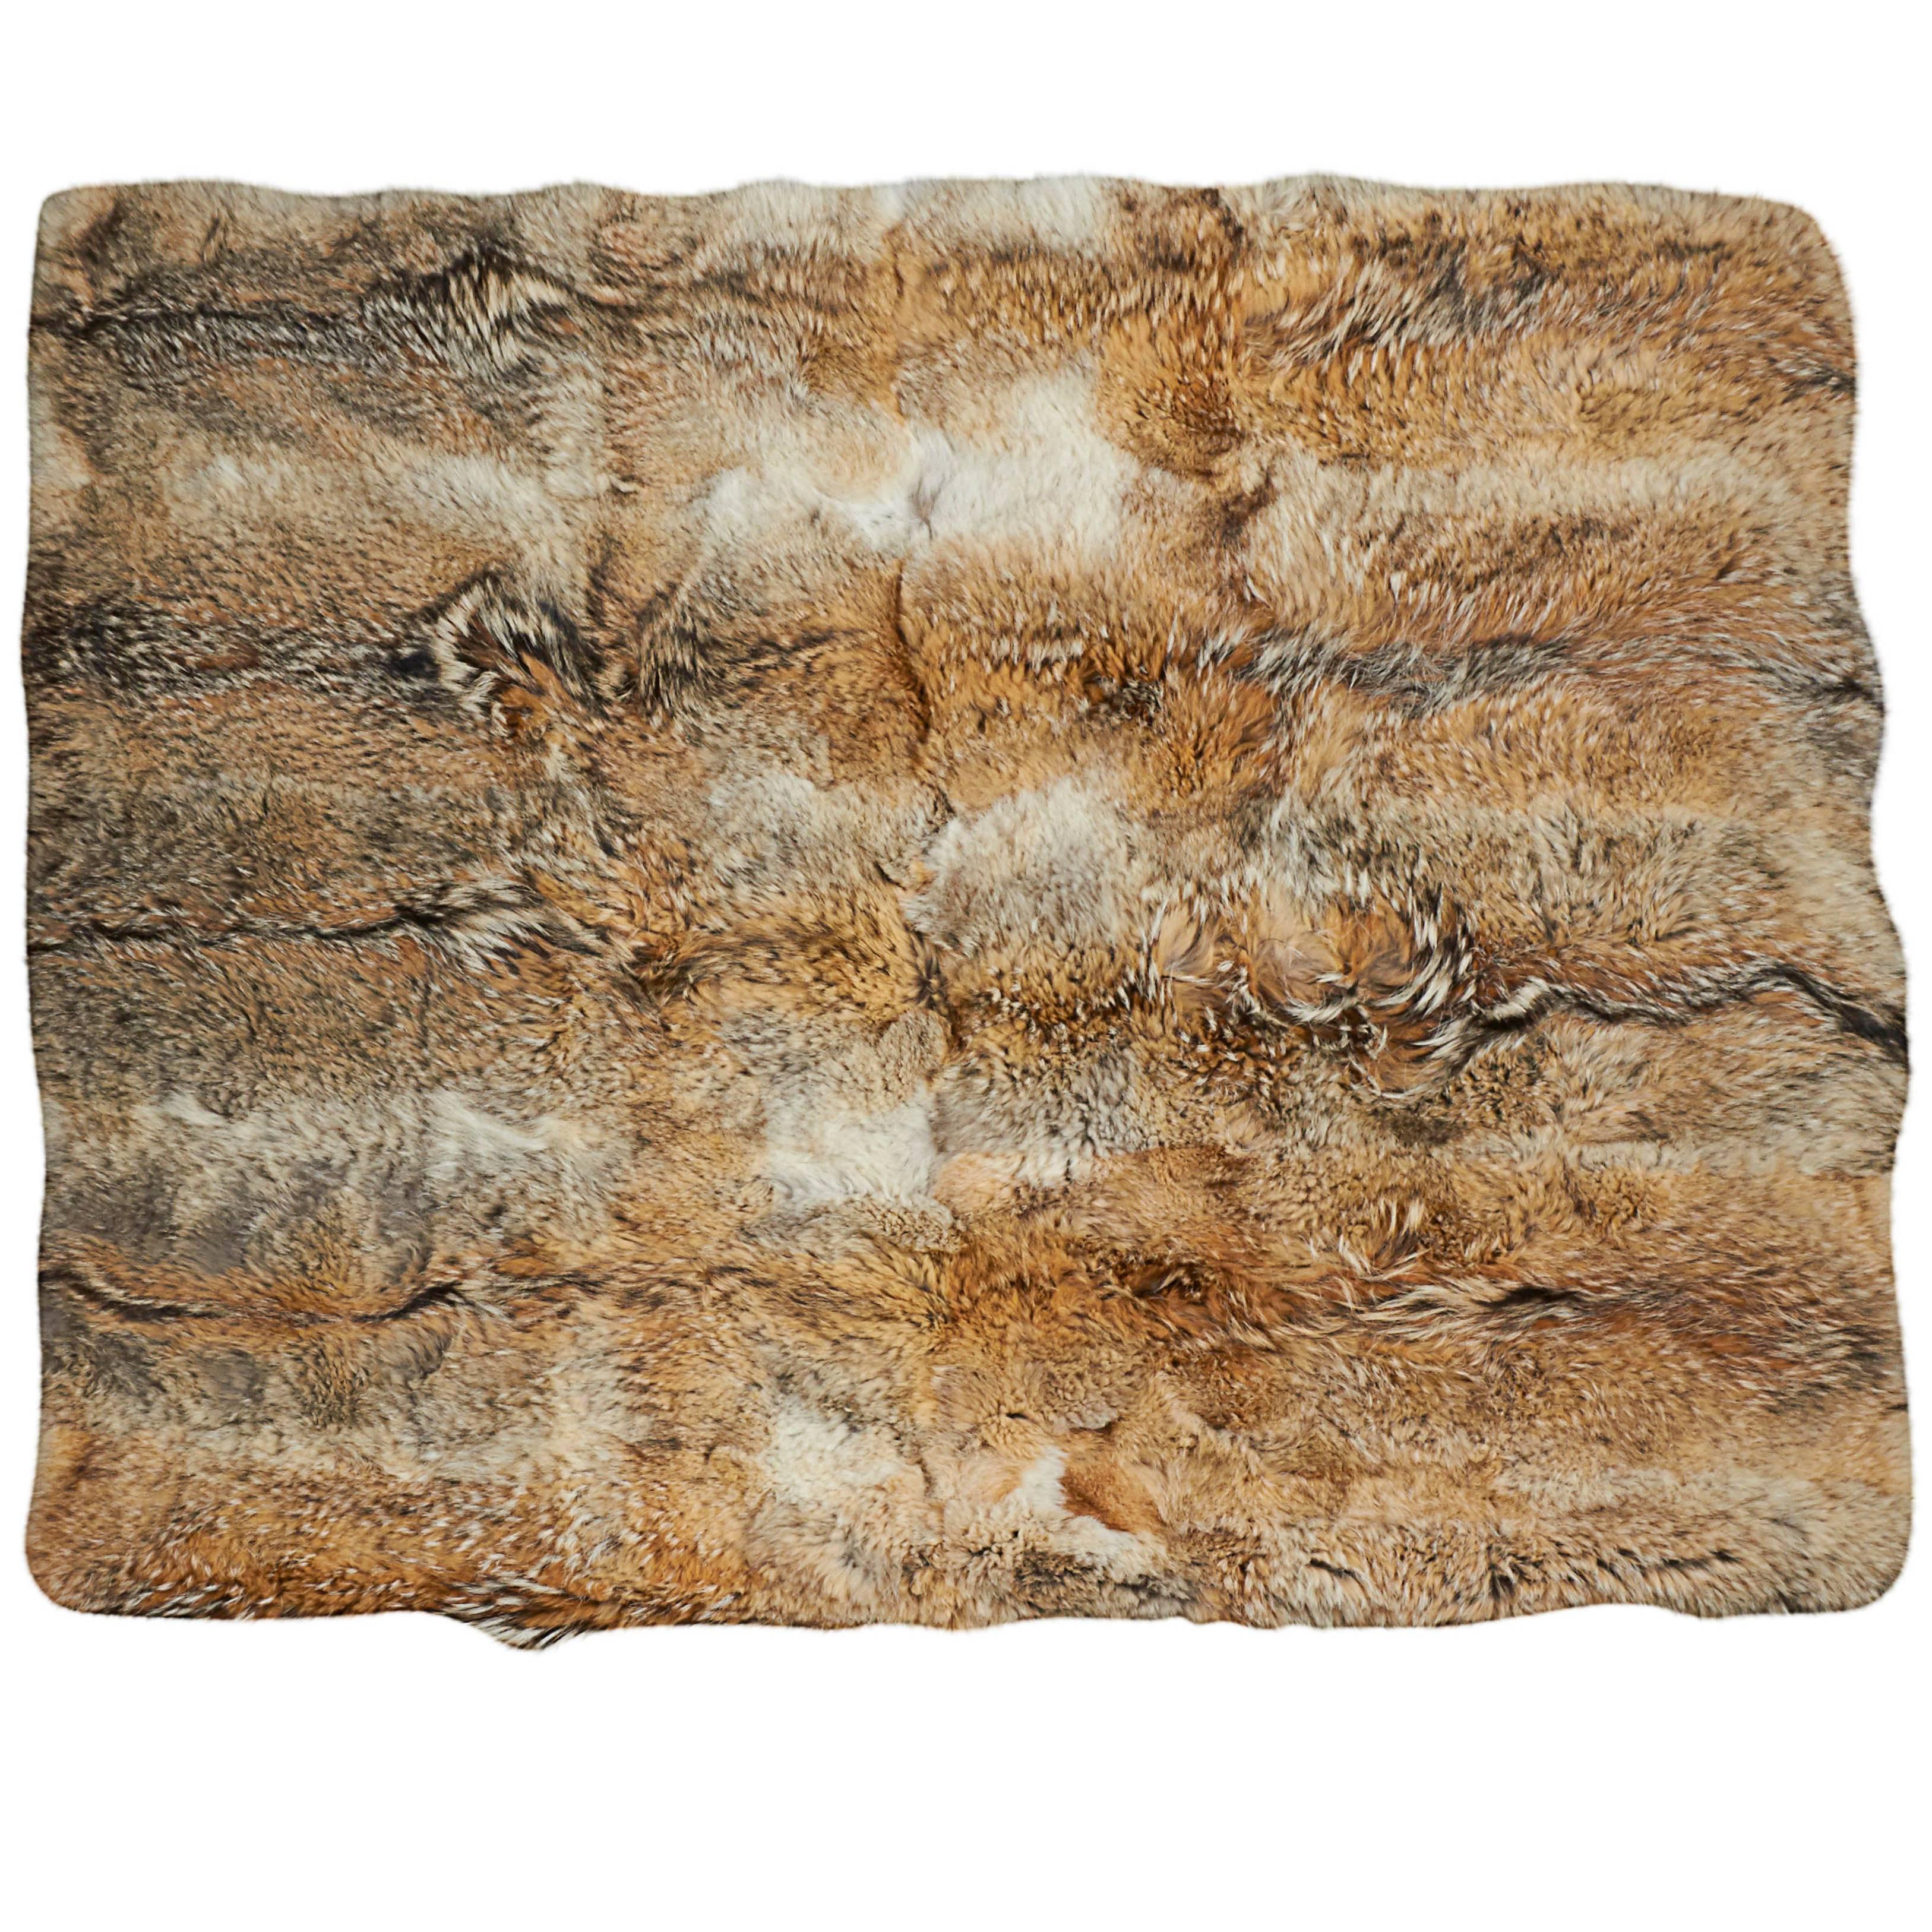 Coyote Fur Blanket or Rug